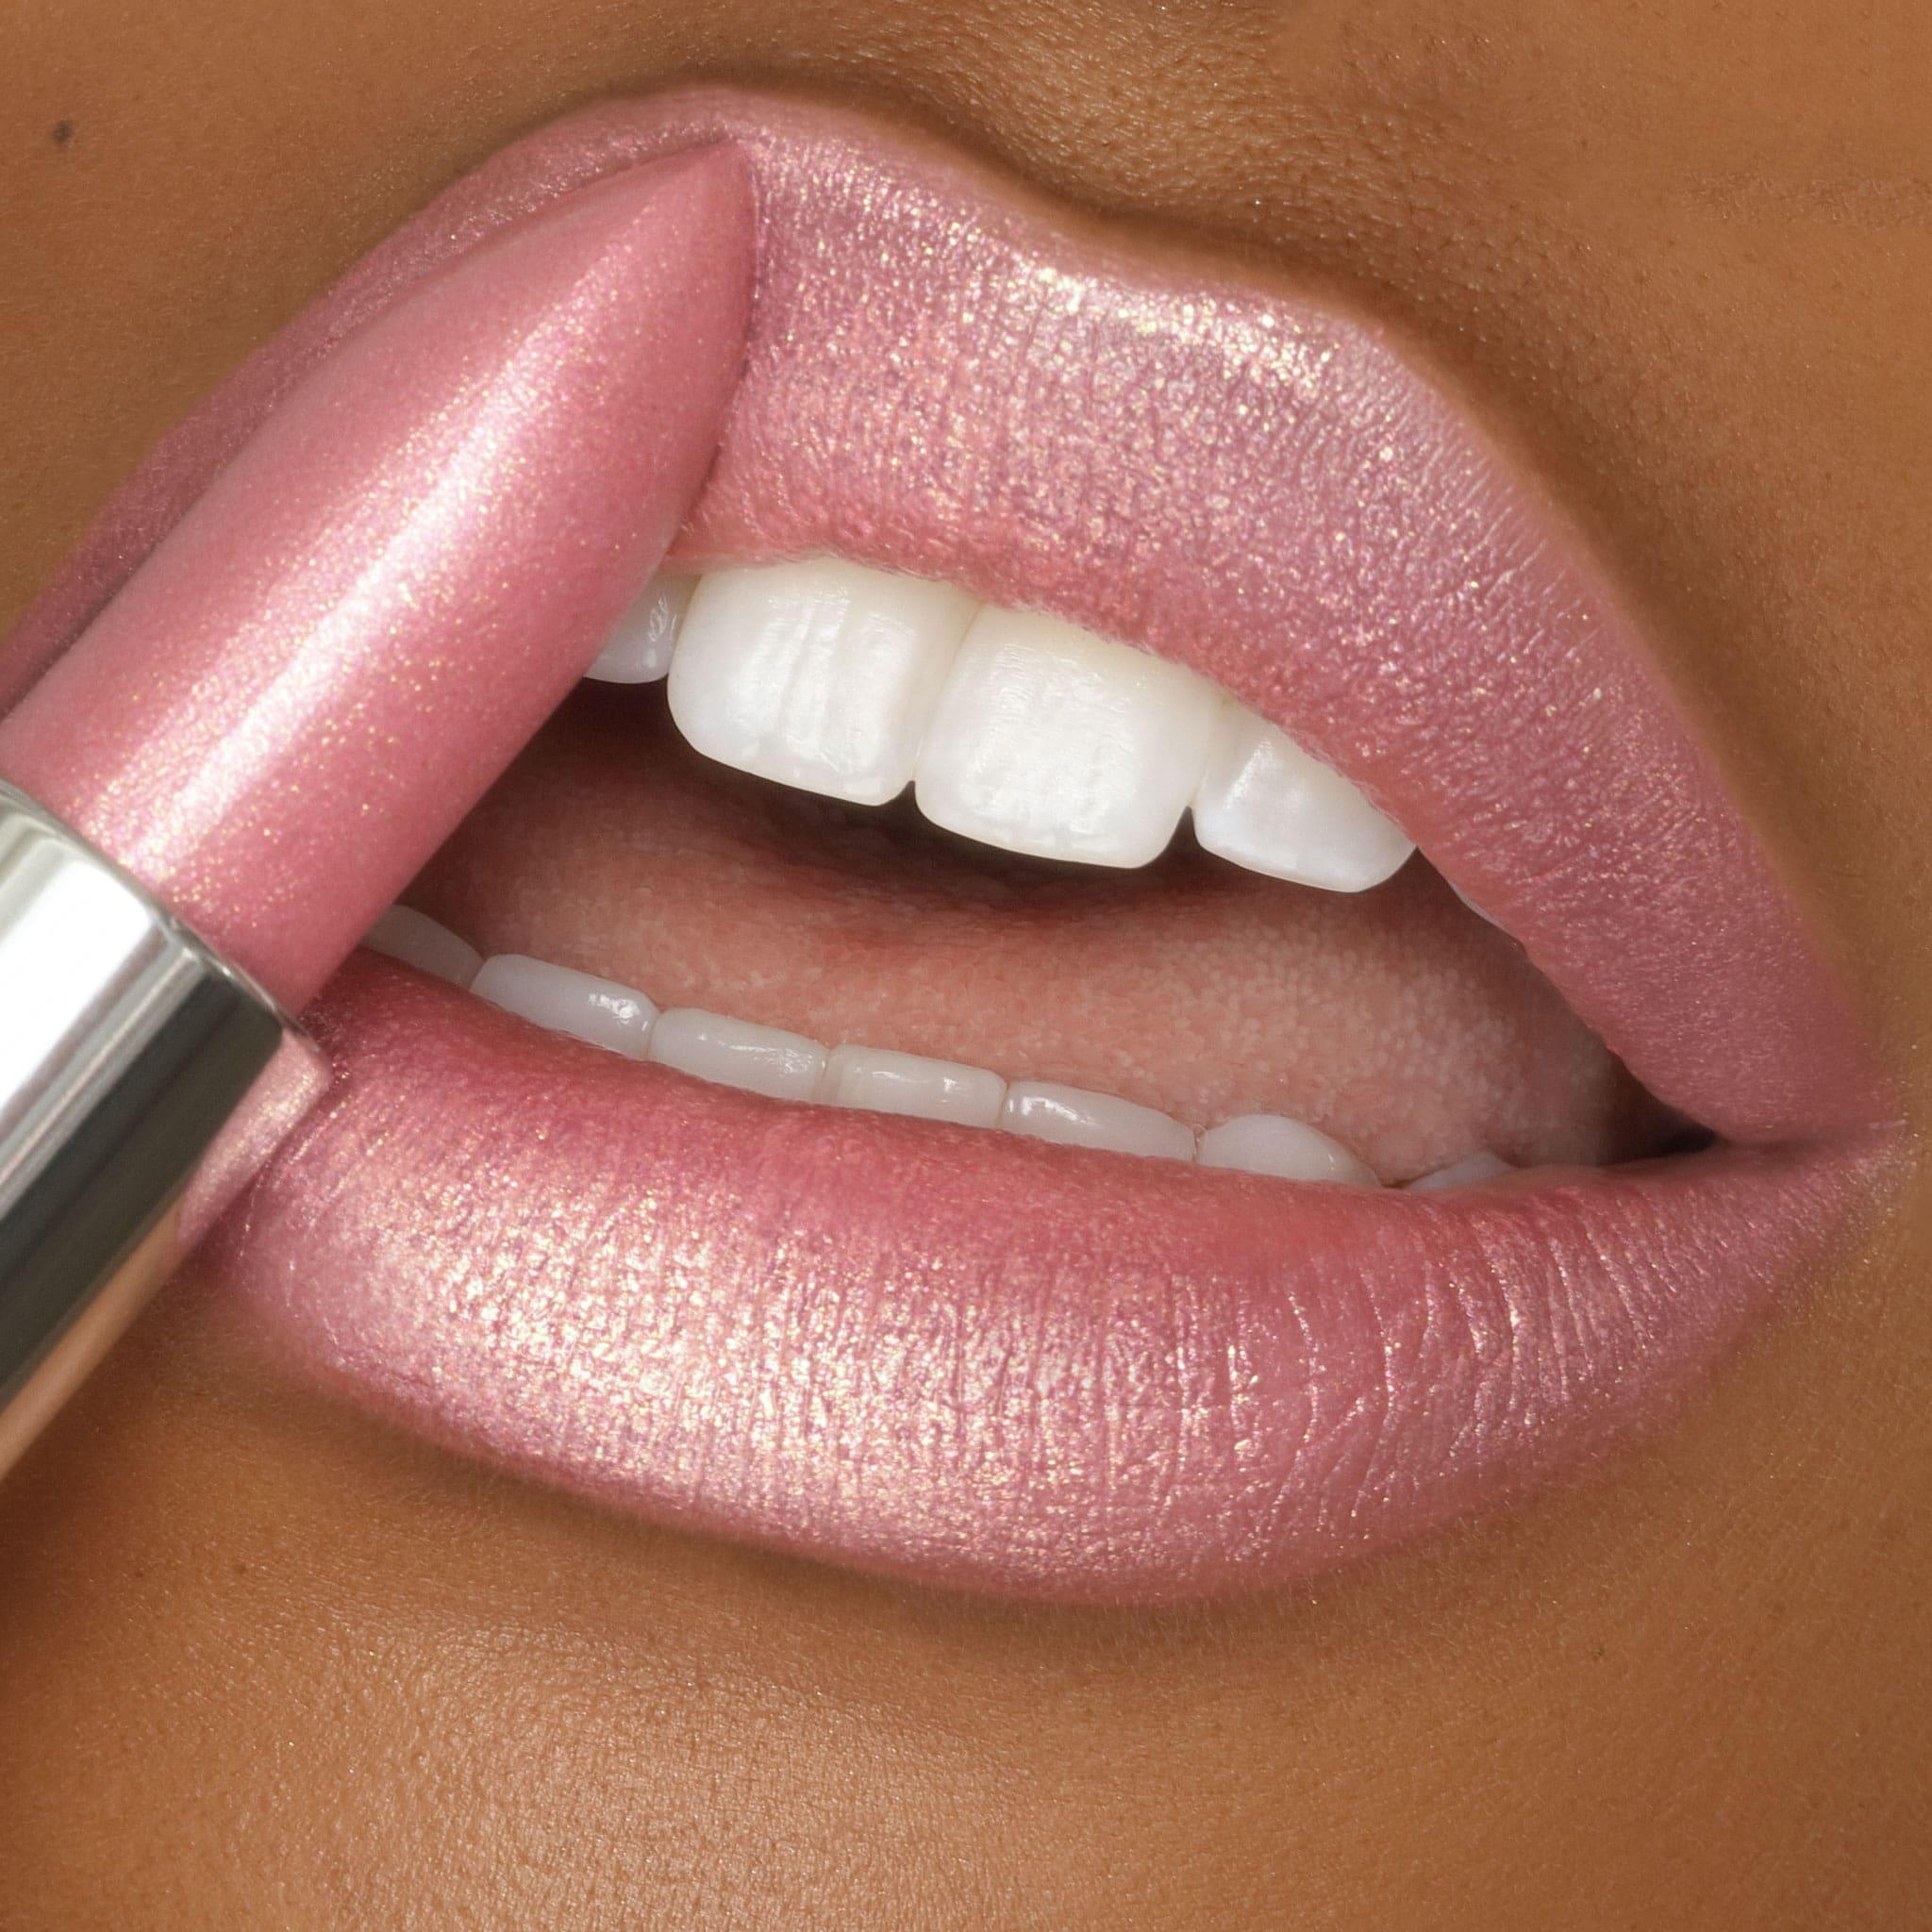 Go See Crème, Sheer Pink Shimmer Lipstick